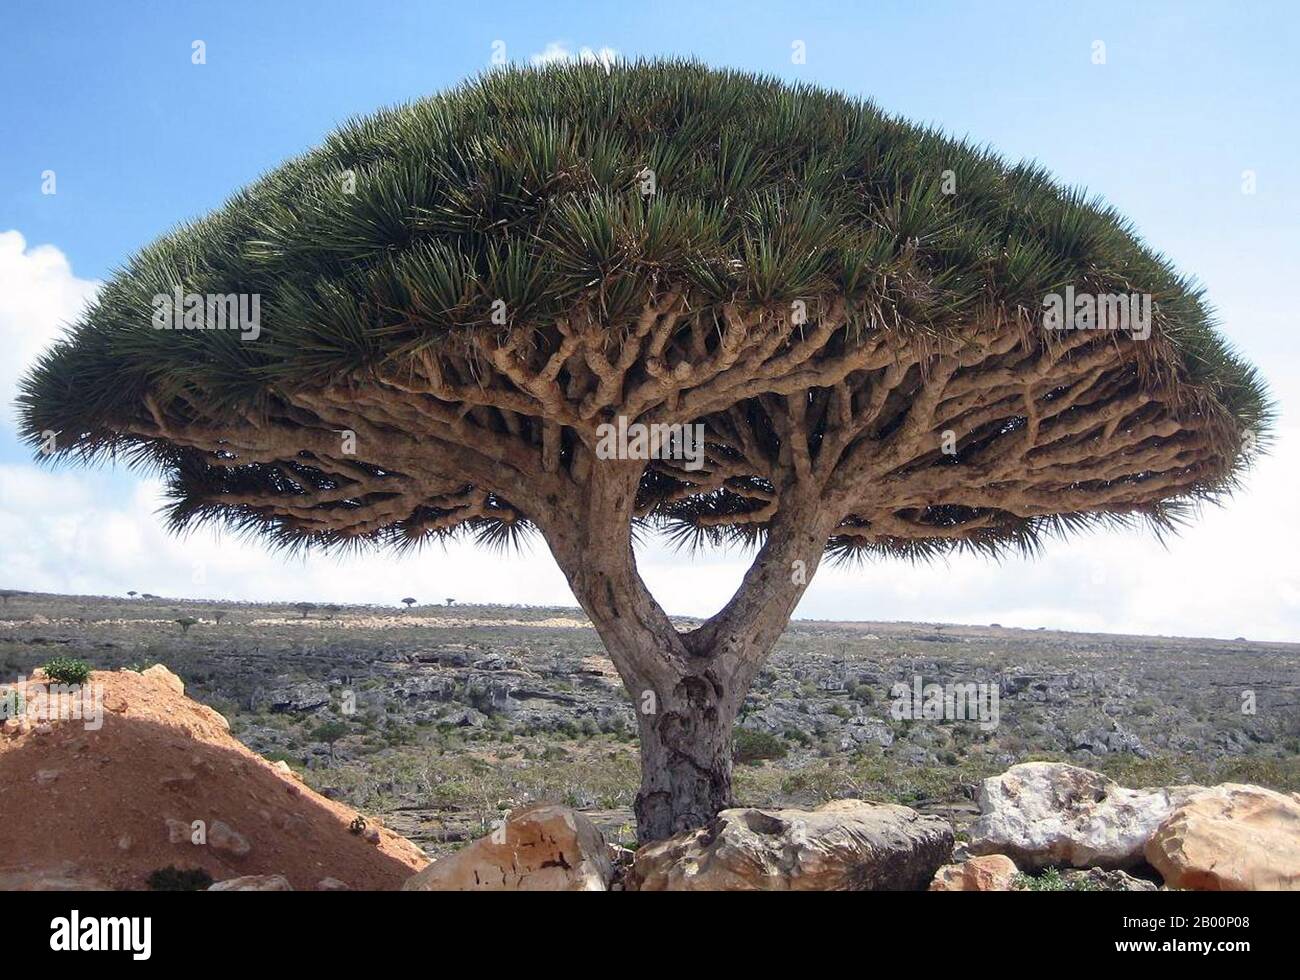 Yemen: Isola di Socotra (isola di Suqutra), Dracaena cinnabari (albero del  sangue del Drago) sull'altopiano di Dixsam. Socotra, detto anche Soqotra, è  un piccolo arcipelago di quattro isole nell'Oceano Indiano. L'isola più